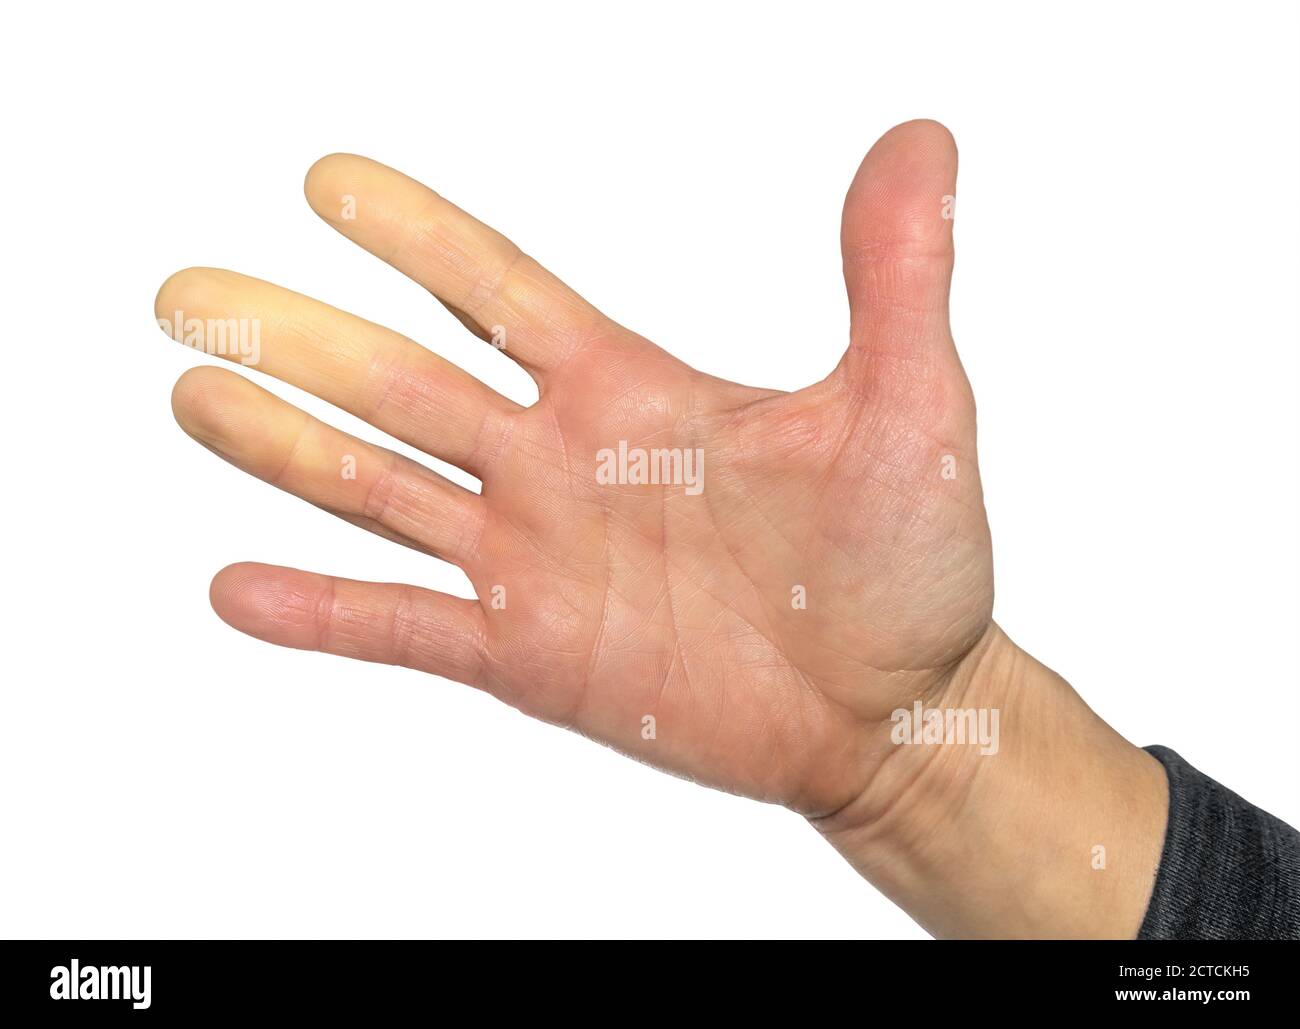 Hand mit Raynaud-Syndrom, Raynaud-Phänomen oder Raynaud-Erkrankungen. Weibliche Hand. Die Finger wurden wegen mangelnder Durchblutung weiß (Pallor). Stockfoto